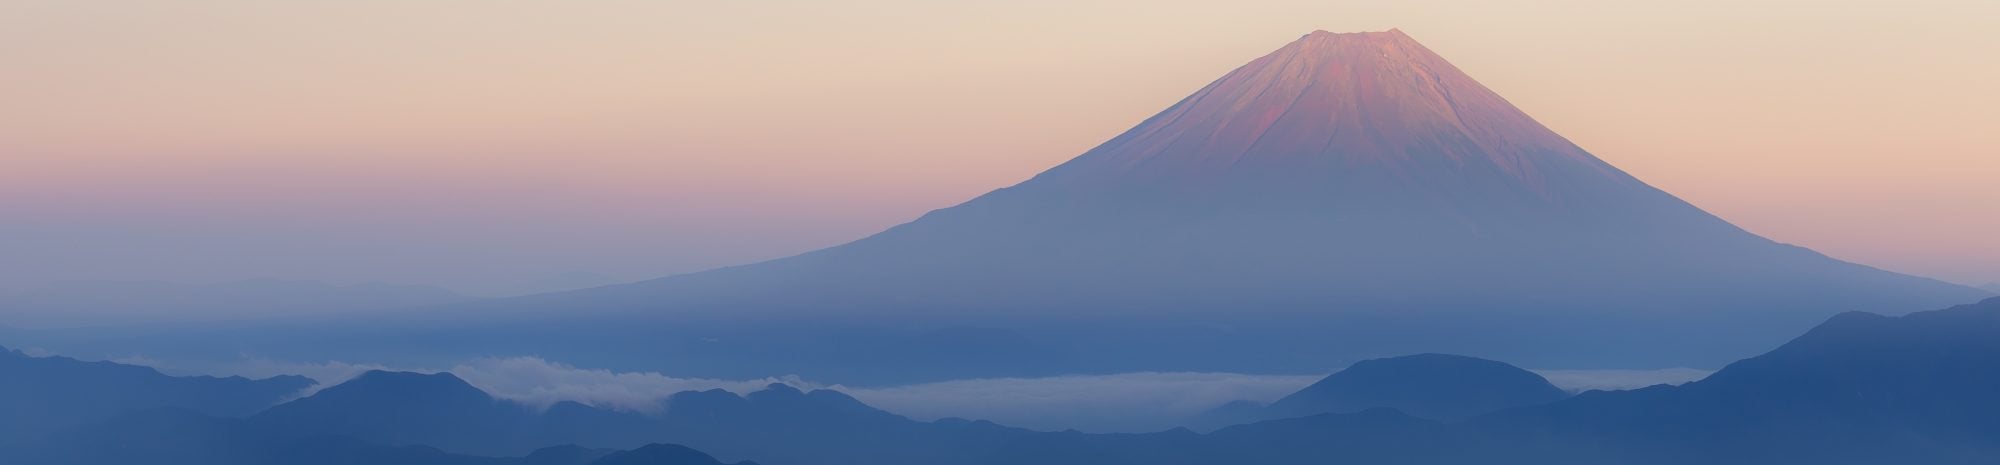 Japon: Entre ville et sanctuaire, mon voyage au pays du Soleil levant